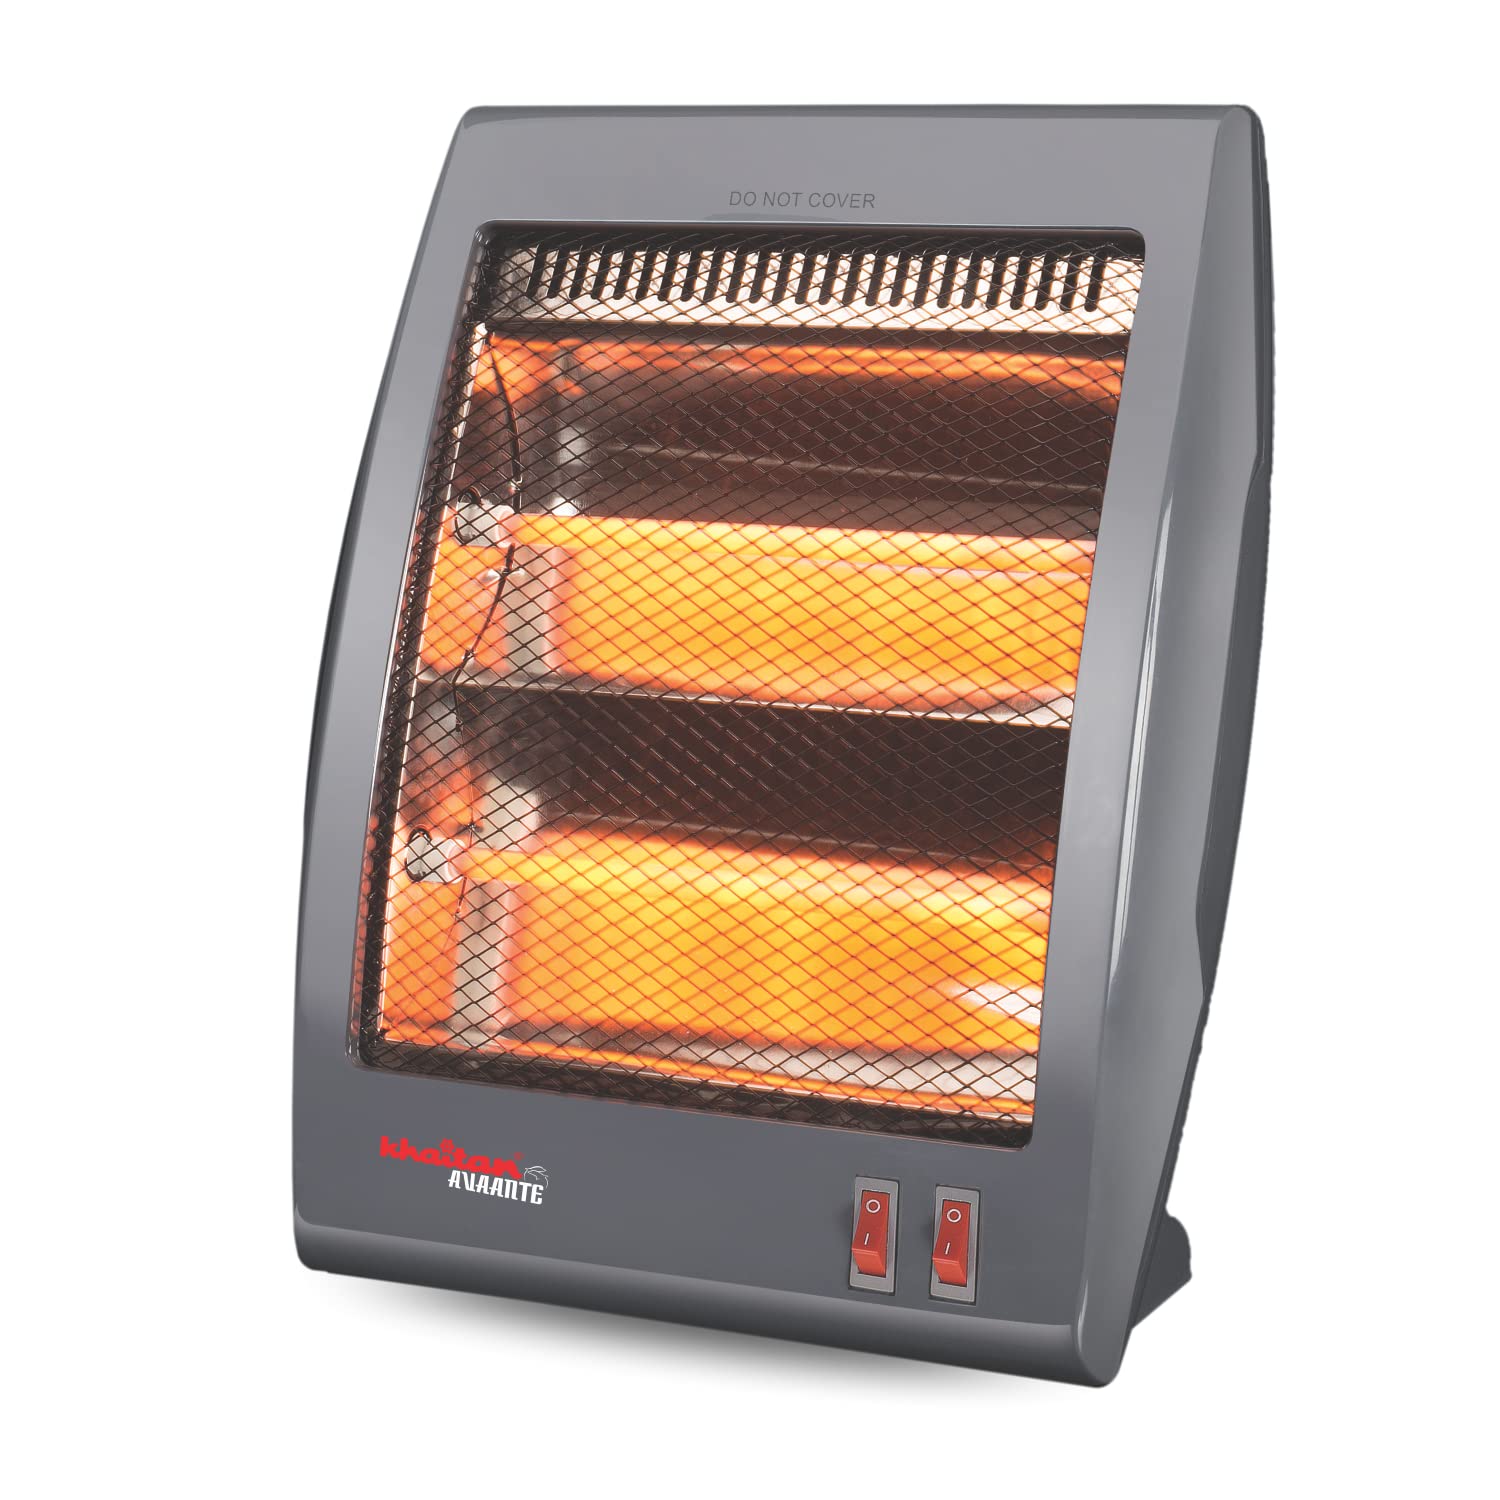 Amazon Sale: तेज ठंड से बचाने वाले कम कीमत के Heater, डील में मिल रहे हैं 700 रुपये से भी कम में